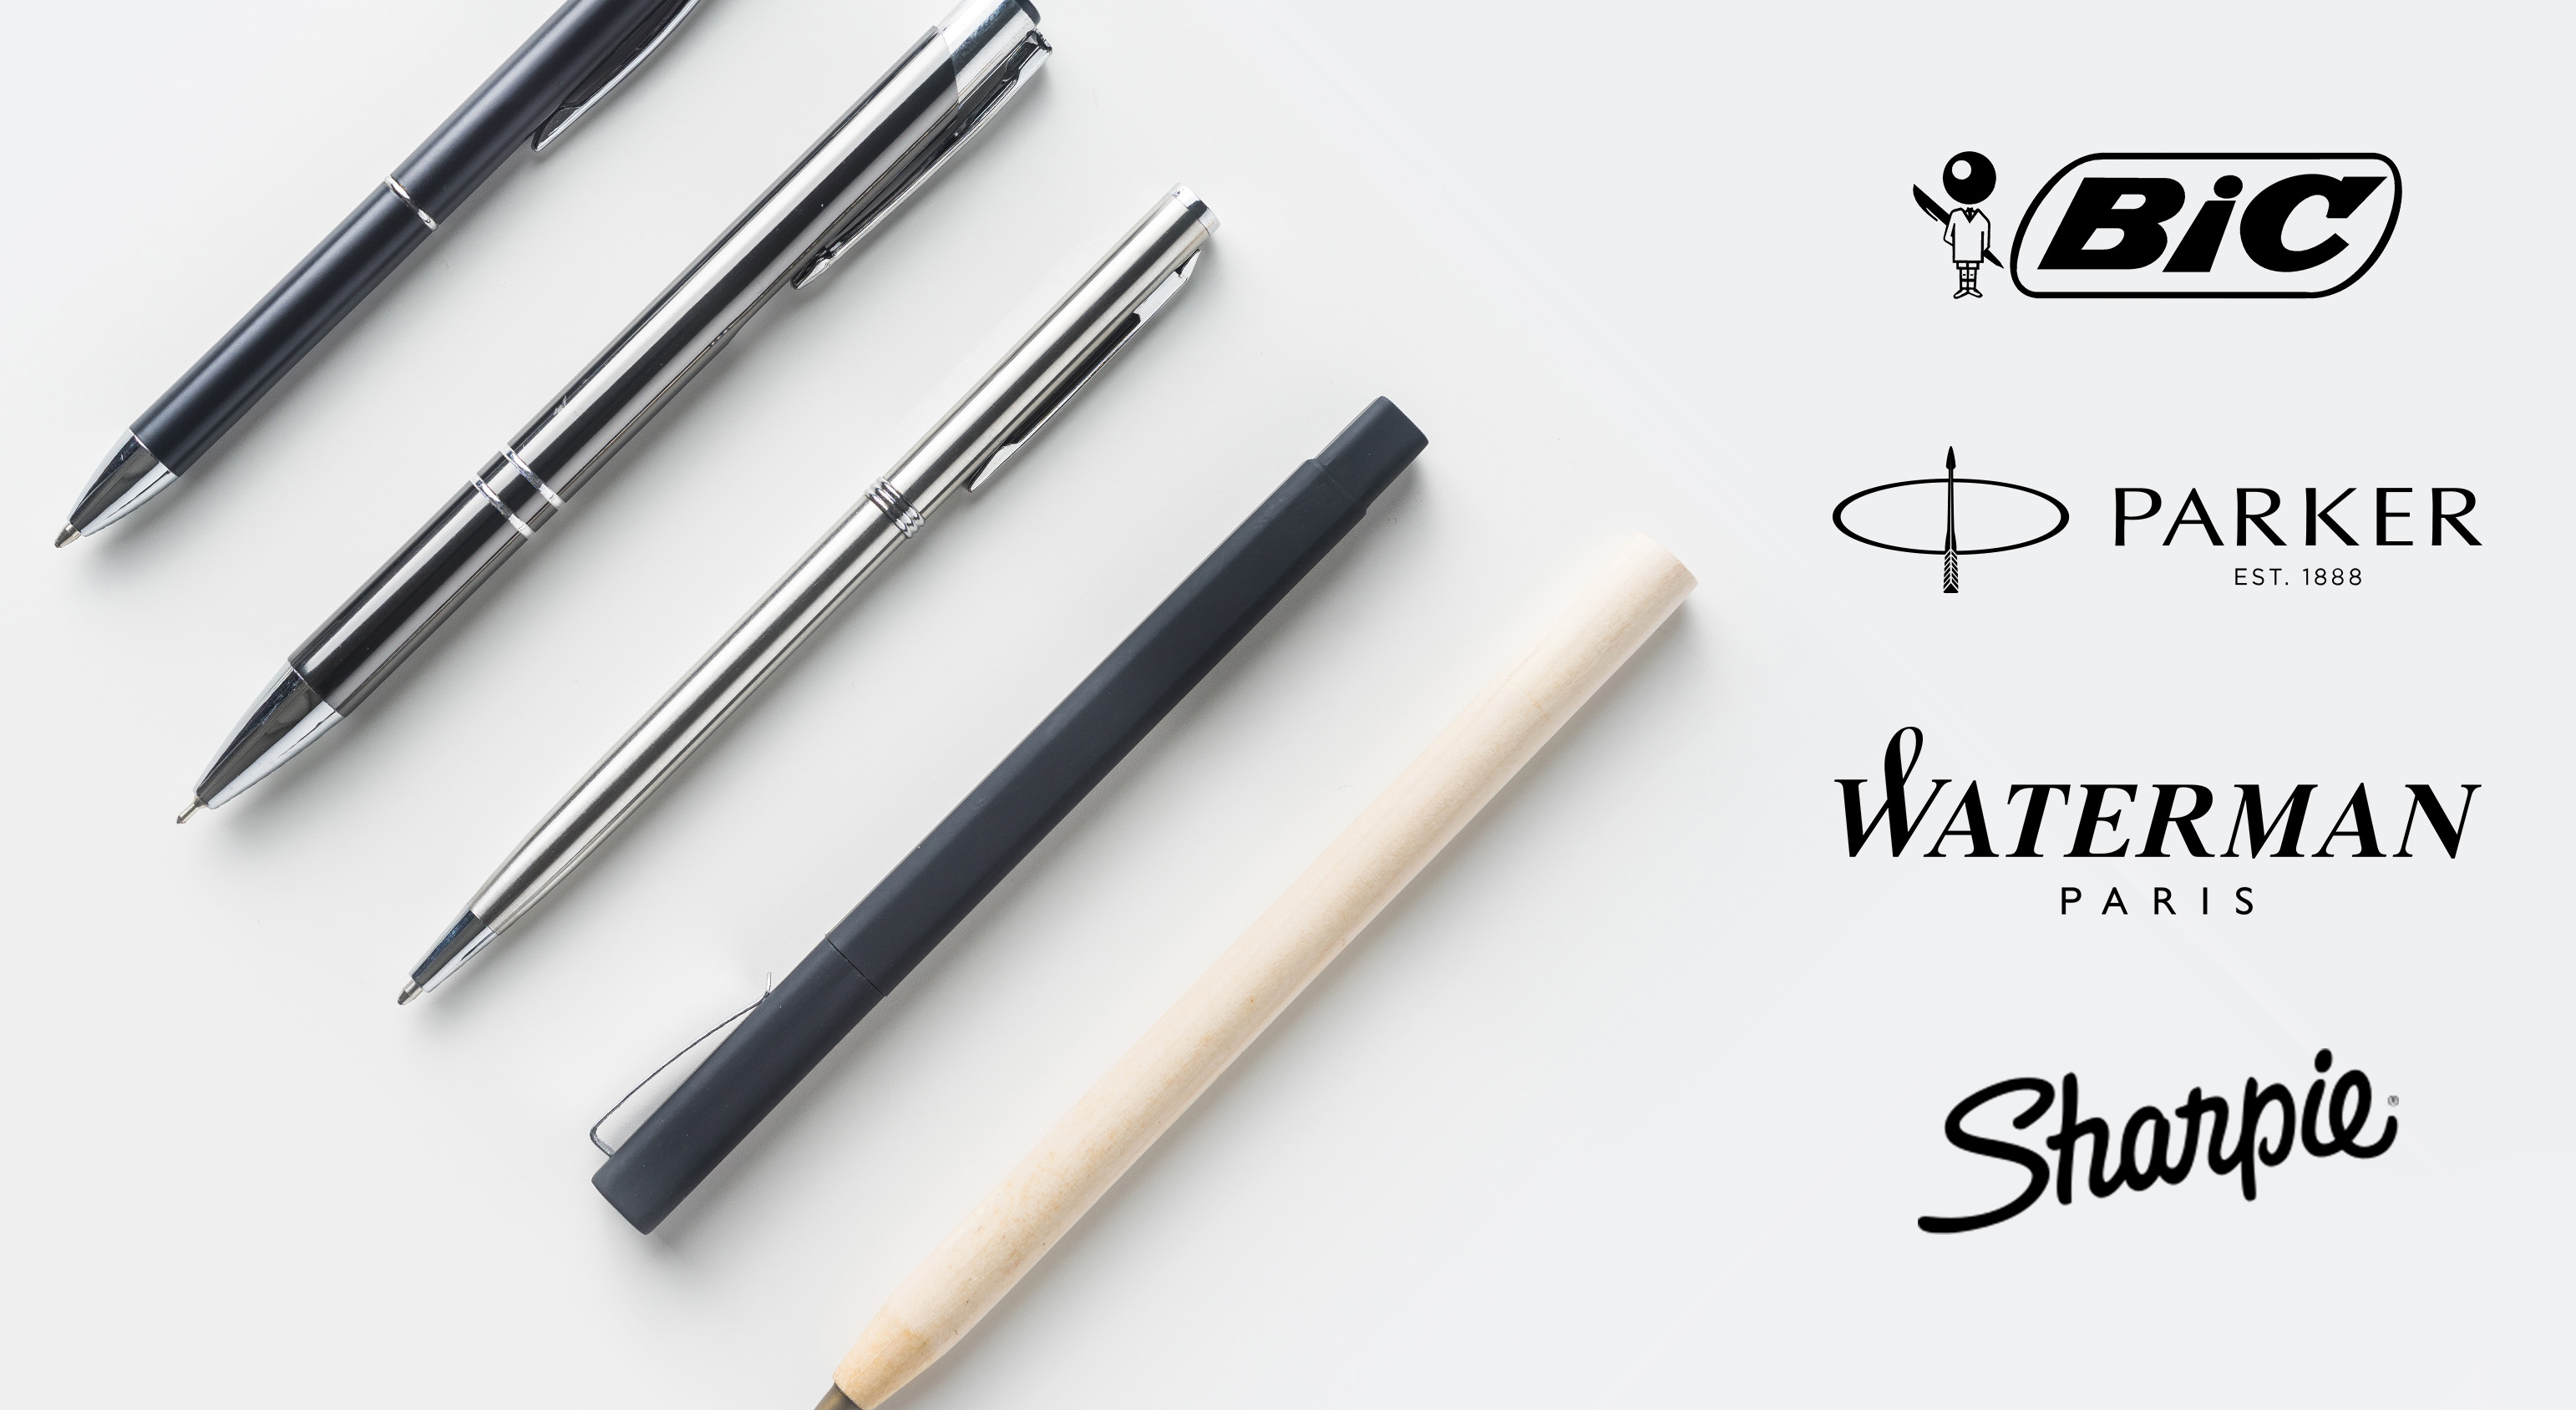 Les meilleures marques de stylos pour votre entreprise